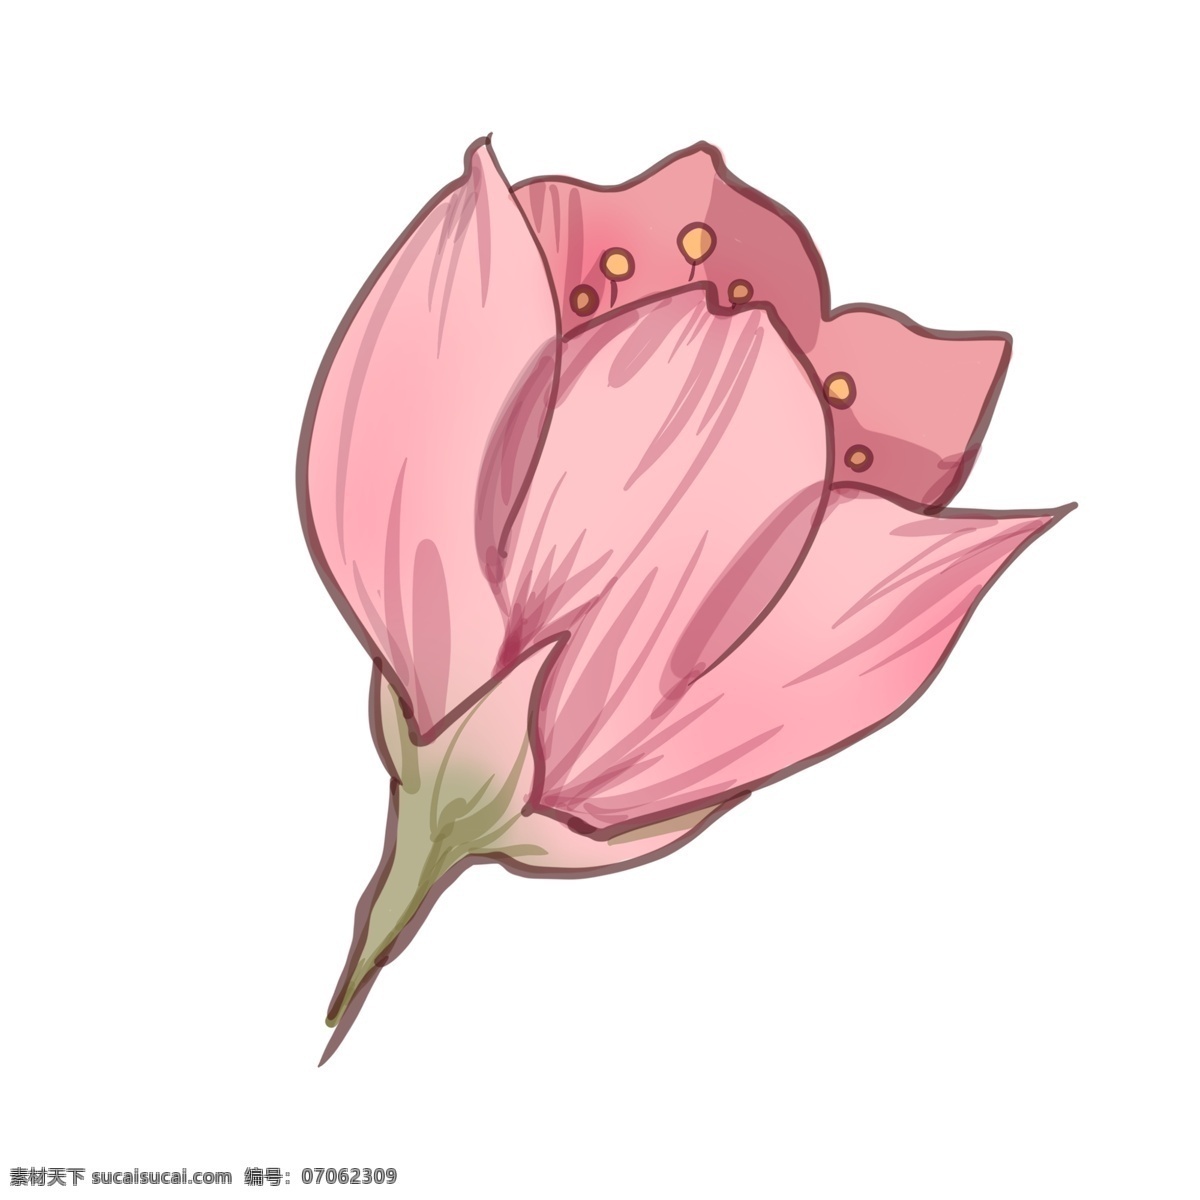 朵 漂亮 樱花 插图 粉色樱花 花儿 花朵 一朵樱花 漂亮的樱花 花枝 樱花枝 花儿插画 粉色花